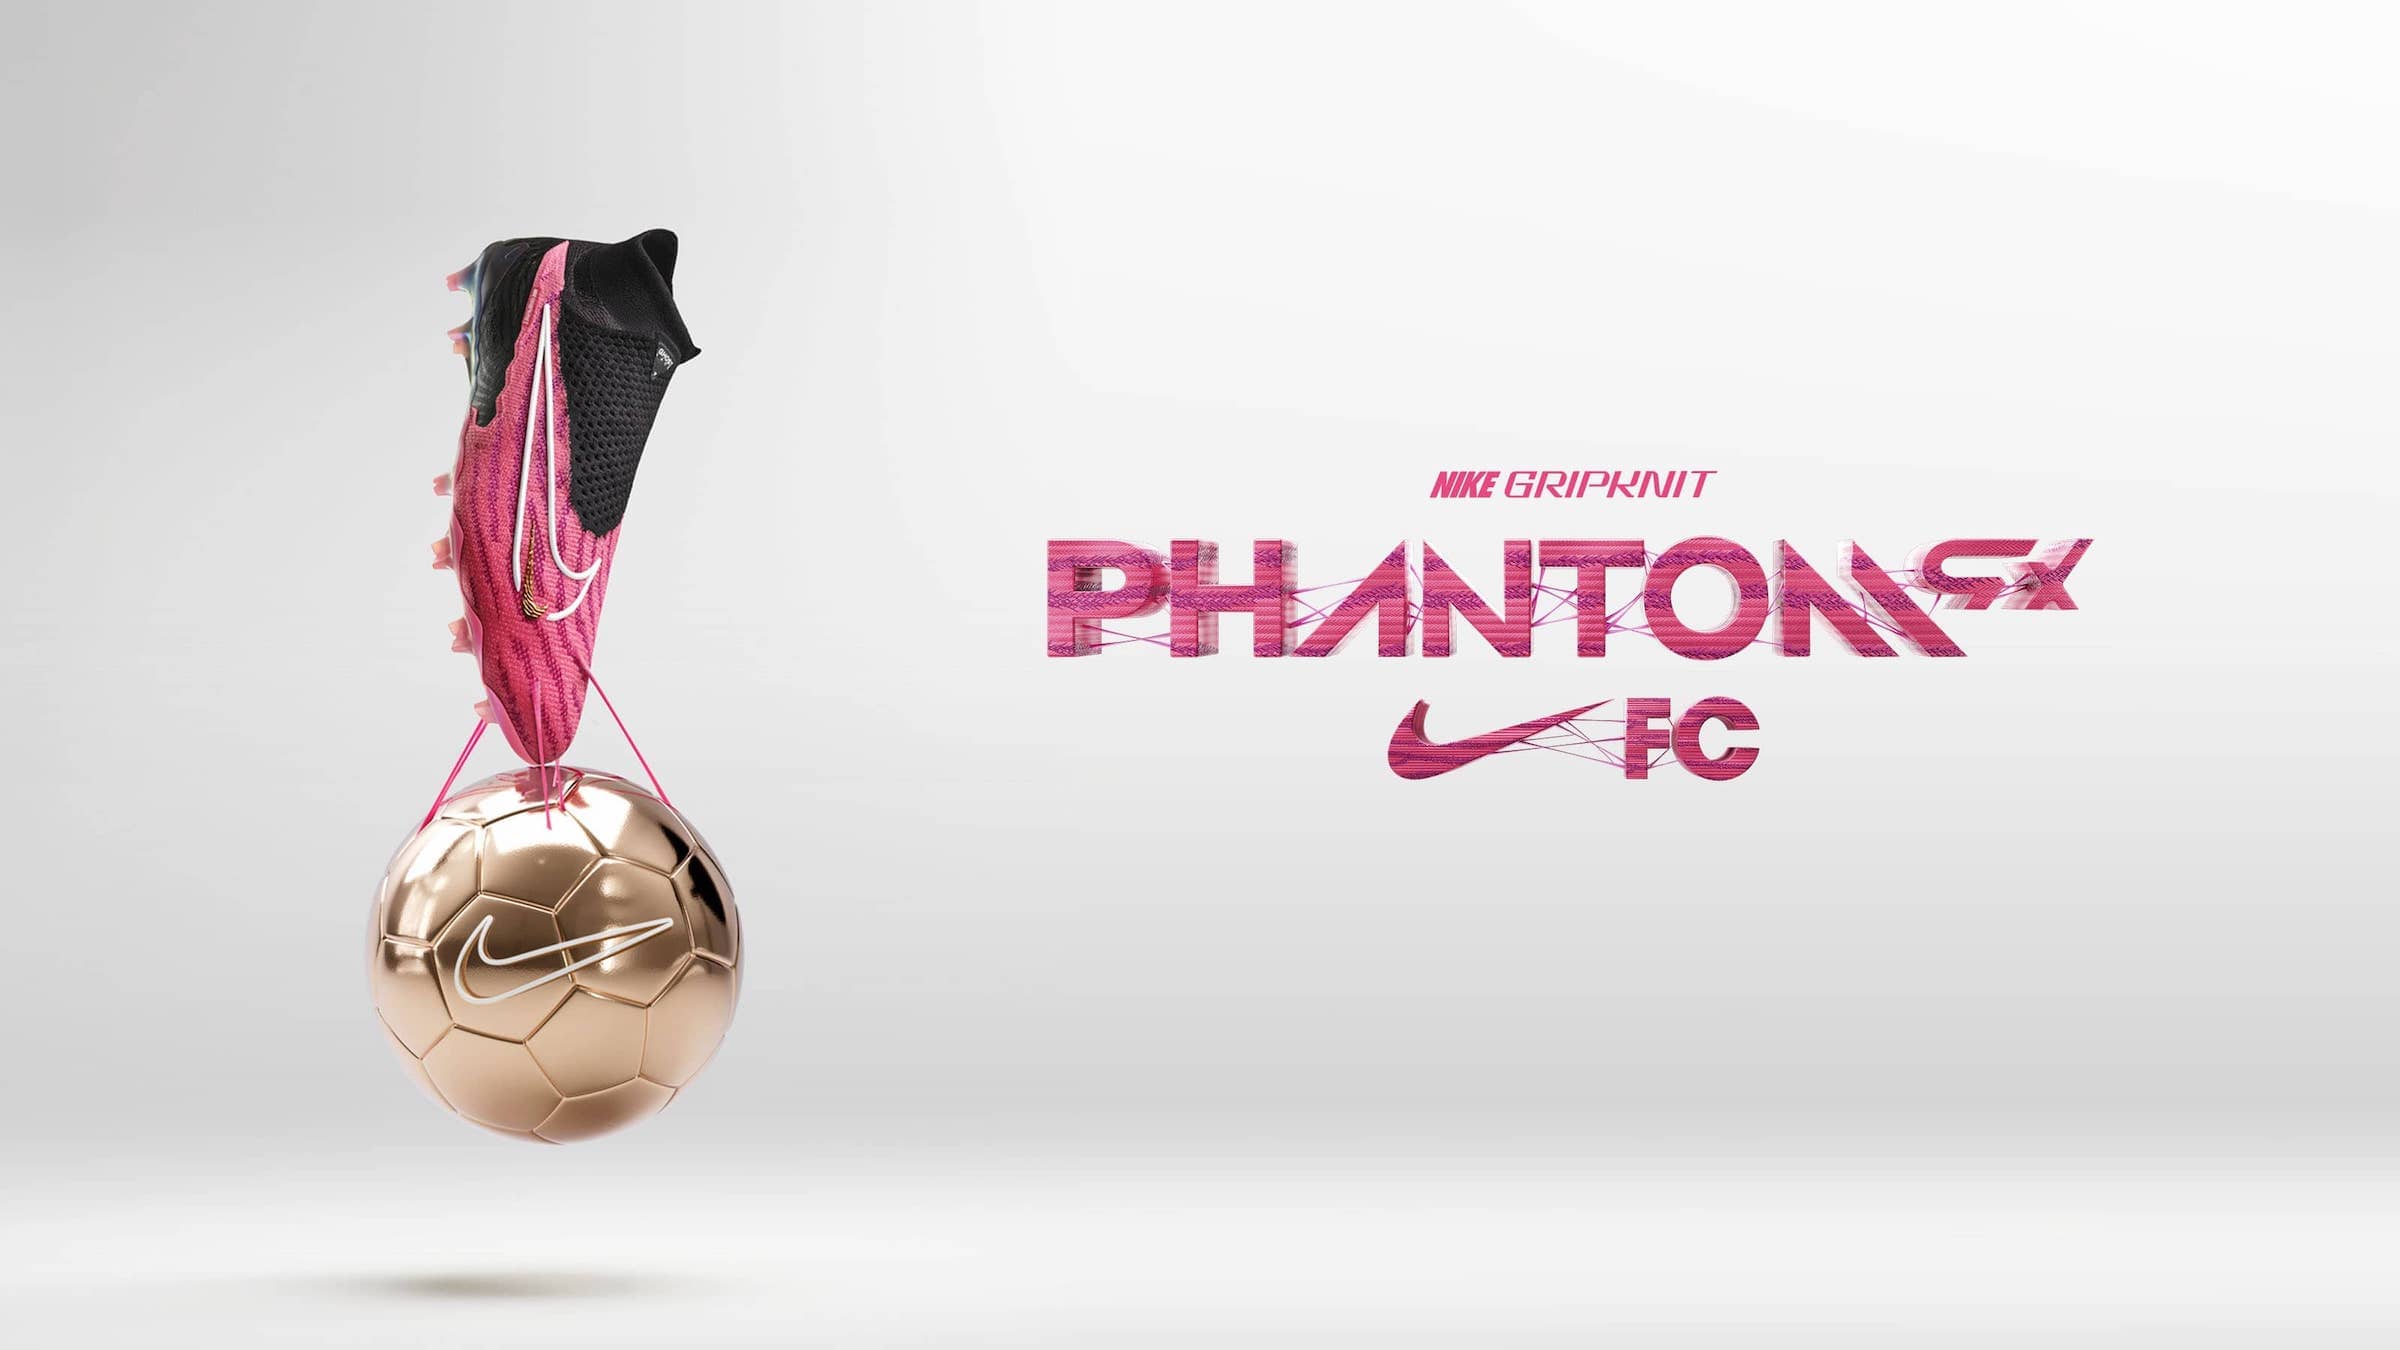 Phantom gx nike football boot